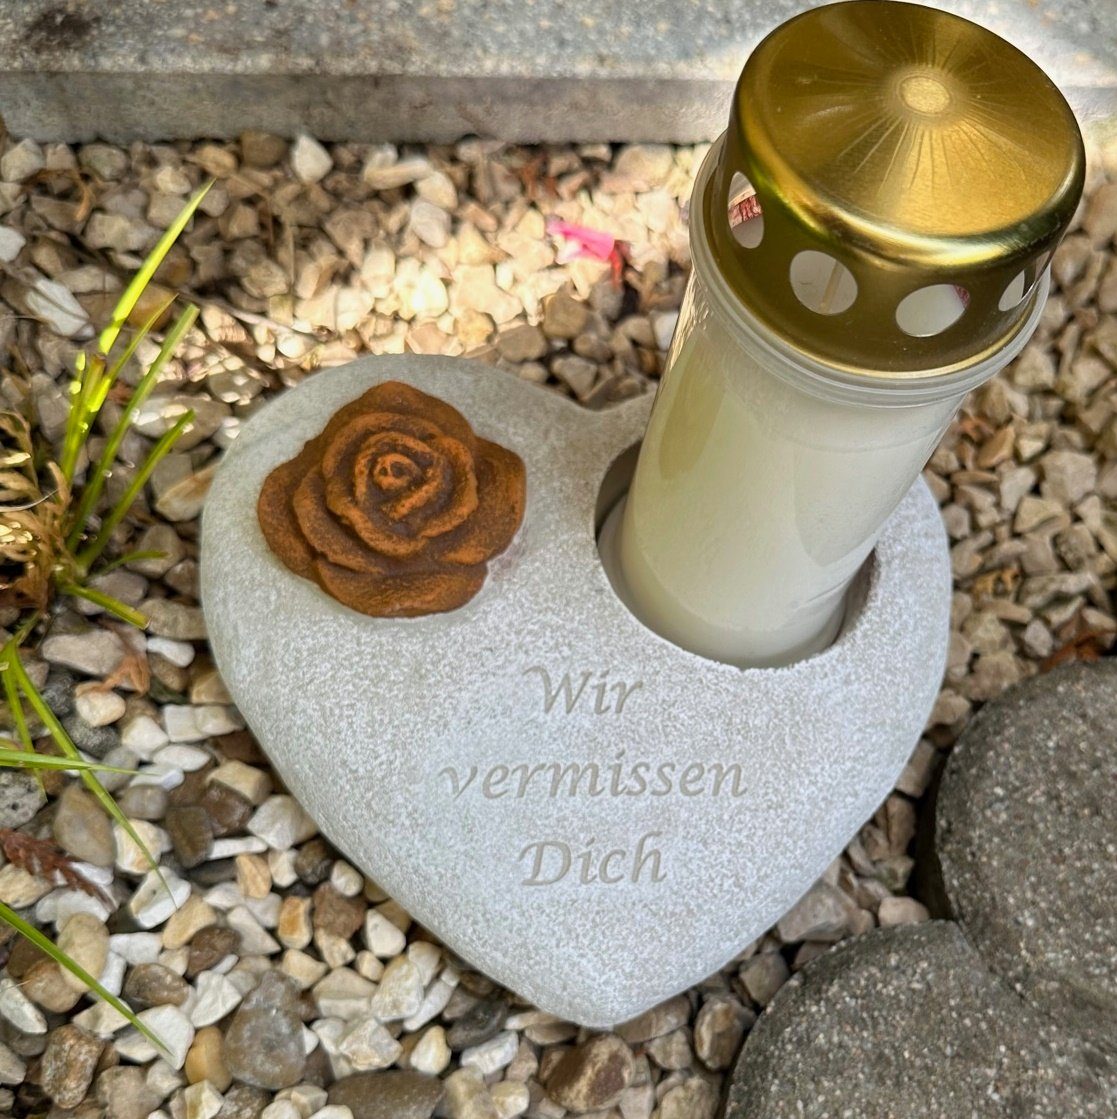 Radami Rohrreinigungspistole Grabherz vermissen Rost Rose - für Wir - Dich Grablicht Grabschmuck